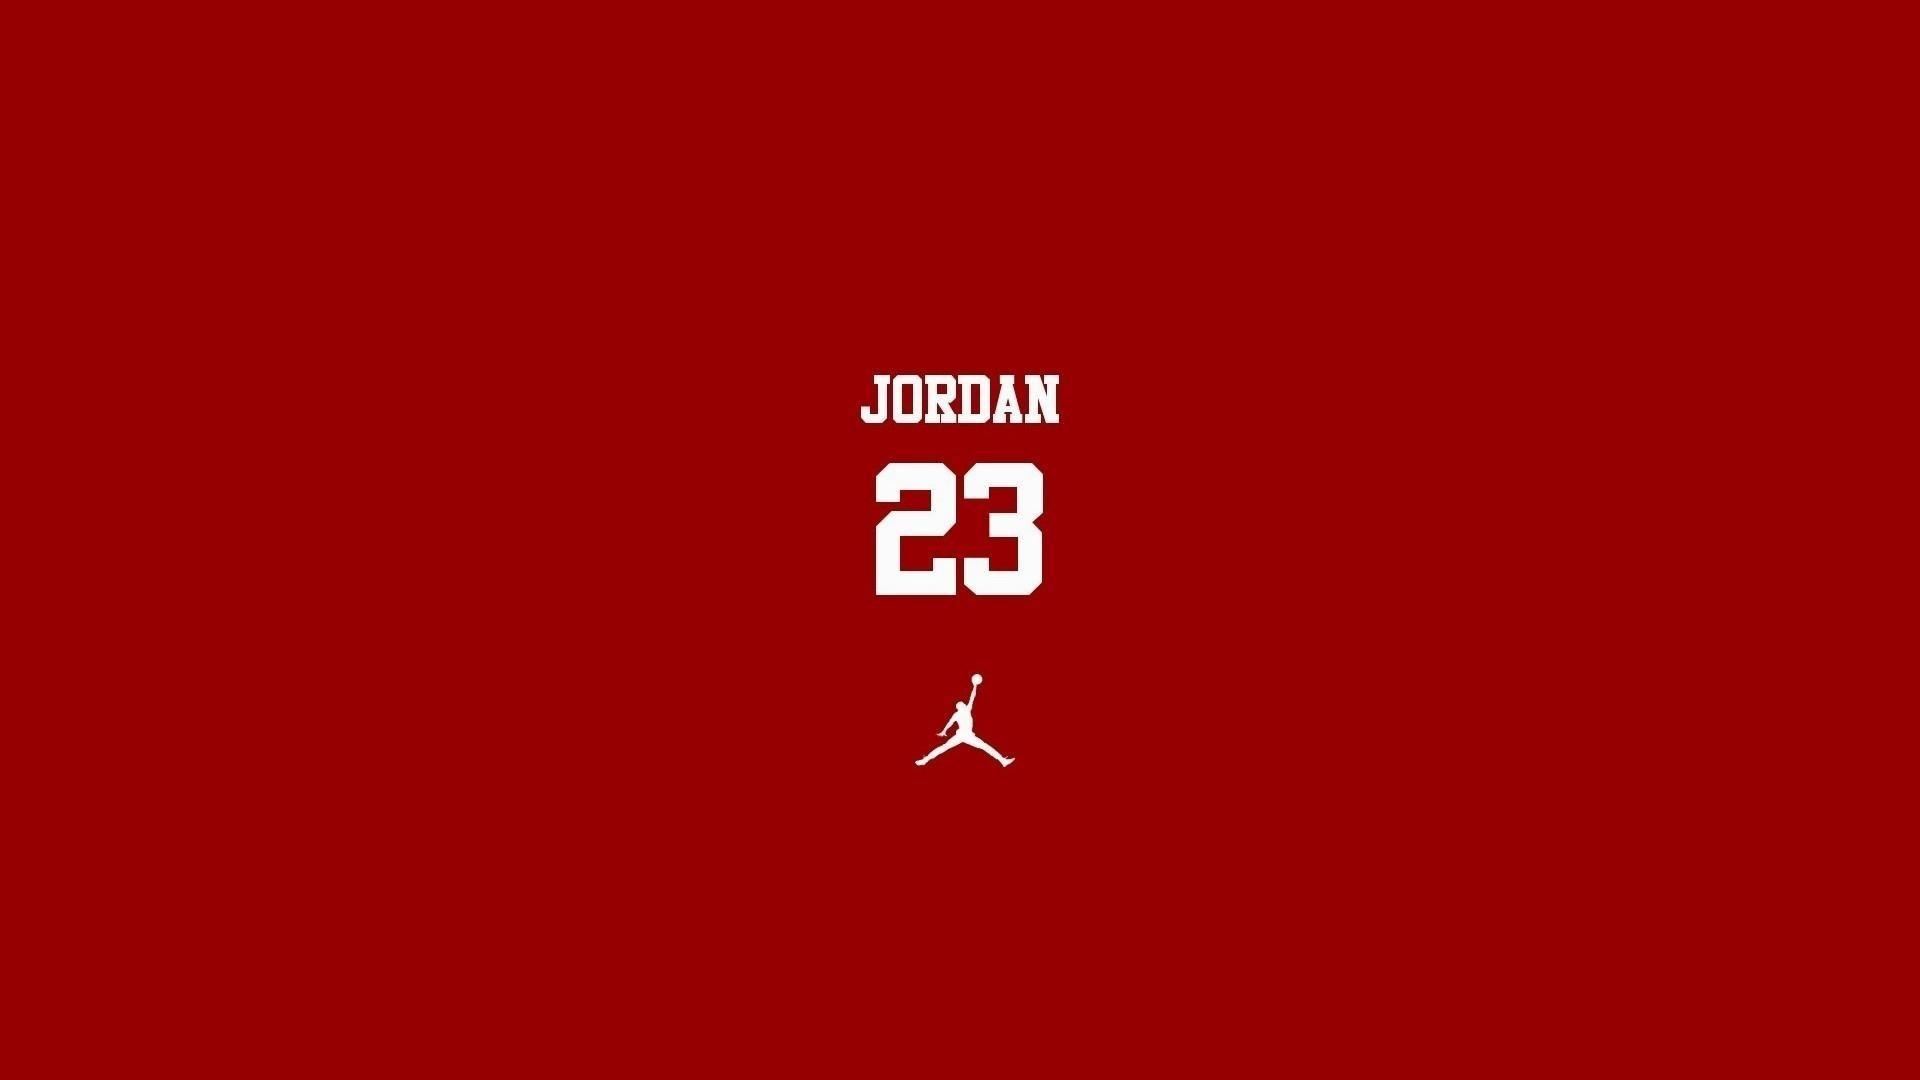 Supreme Jordan Wallpapers - Top Free Supreme Jordan Backgrounds